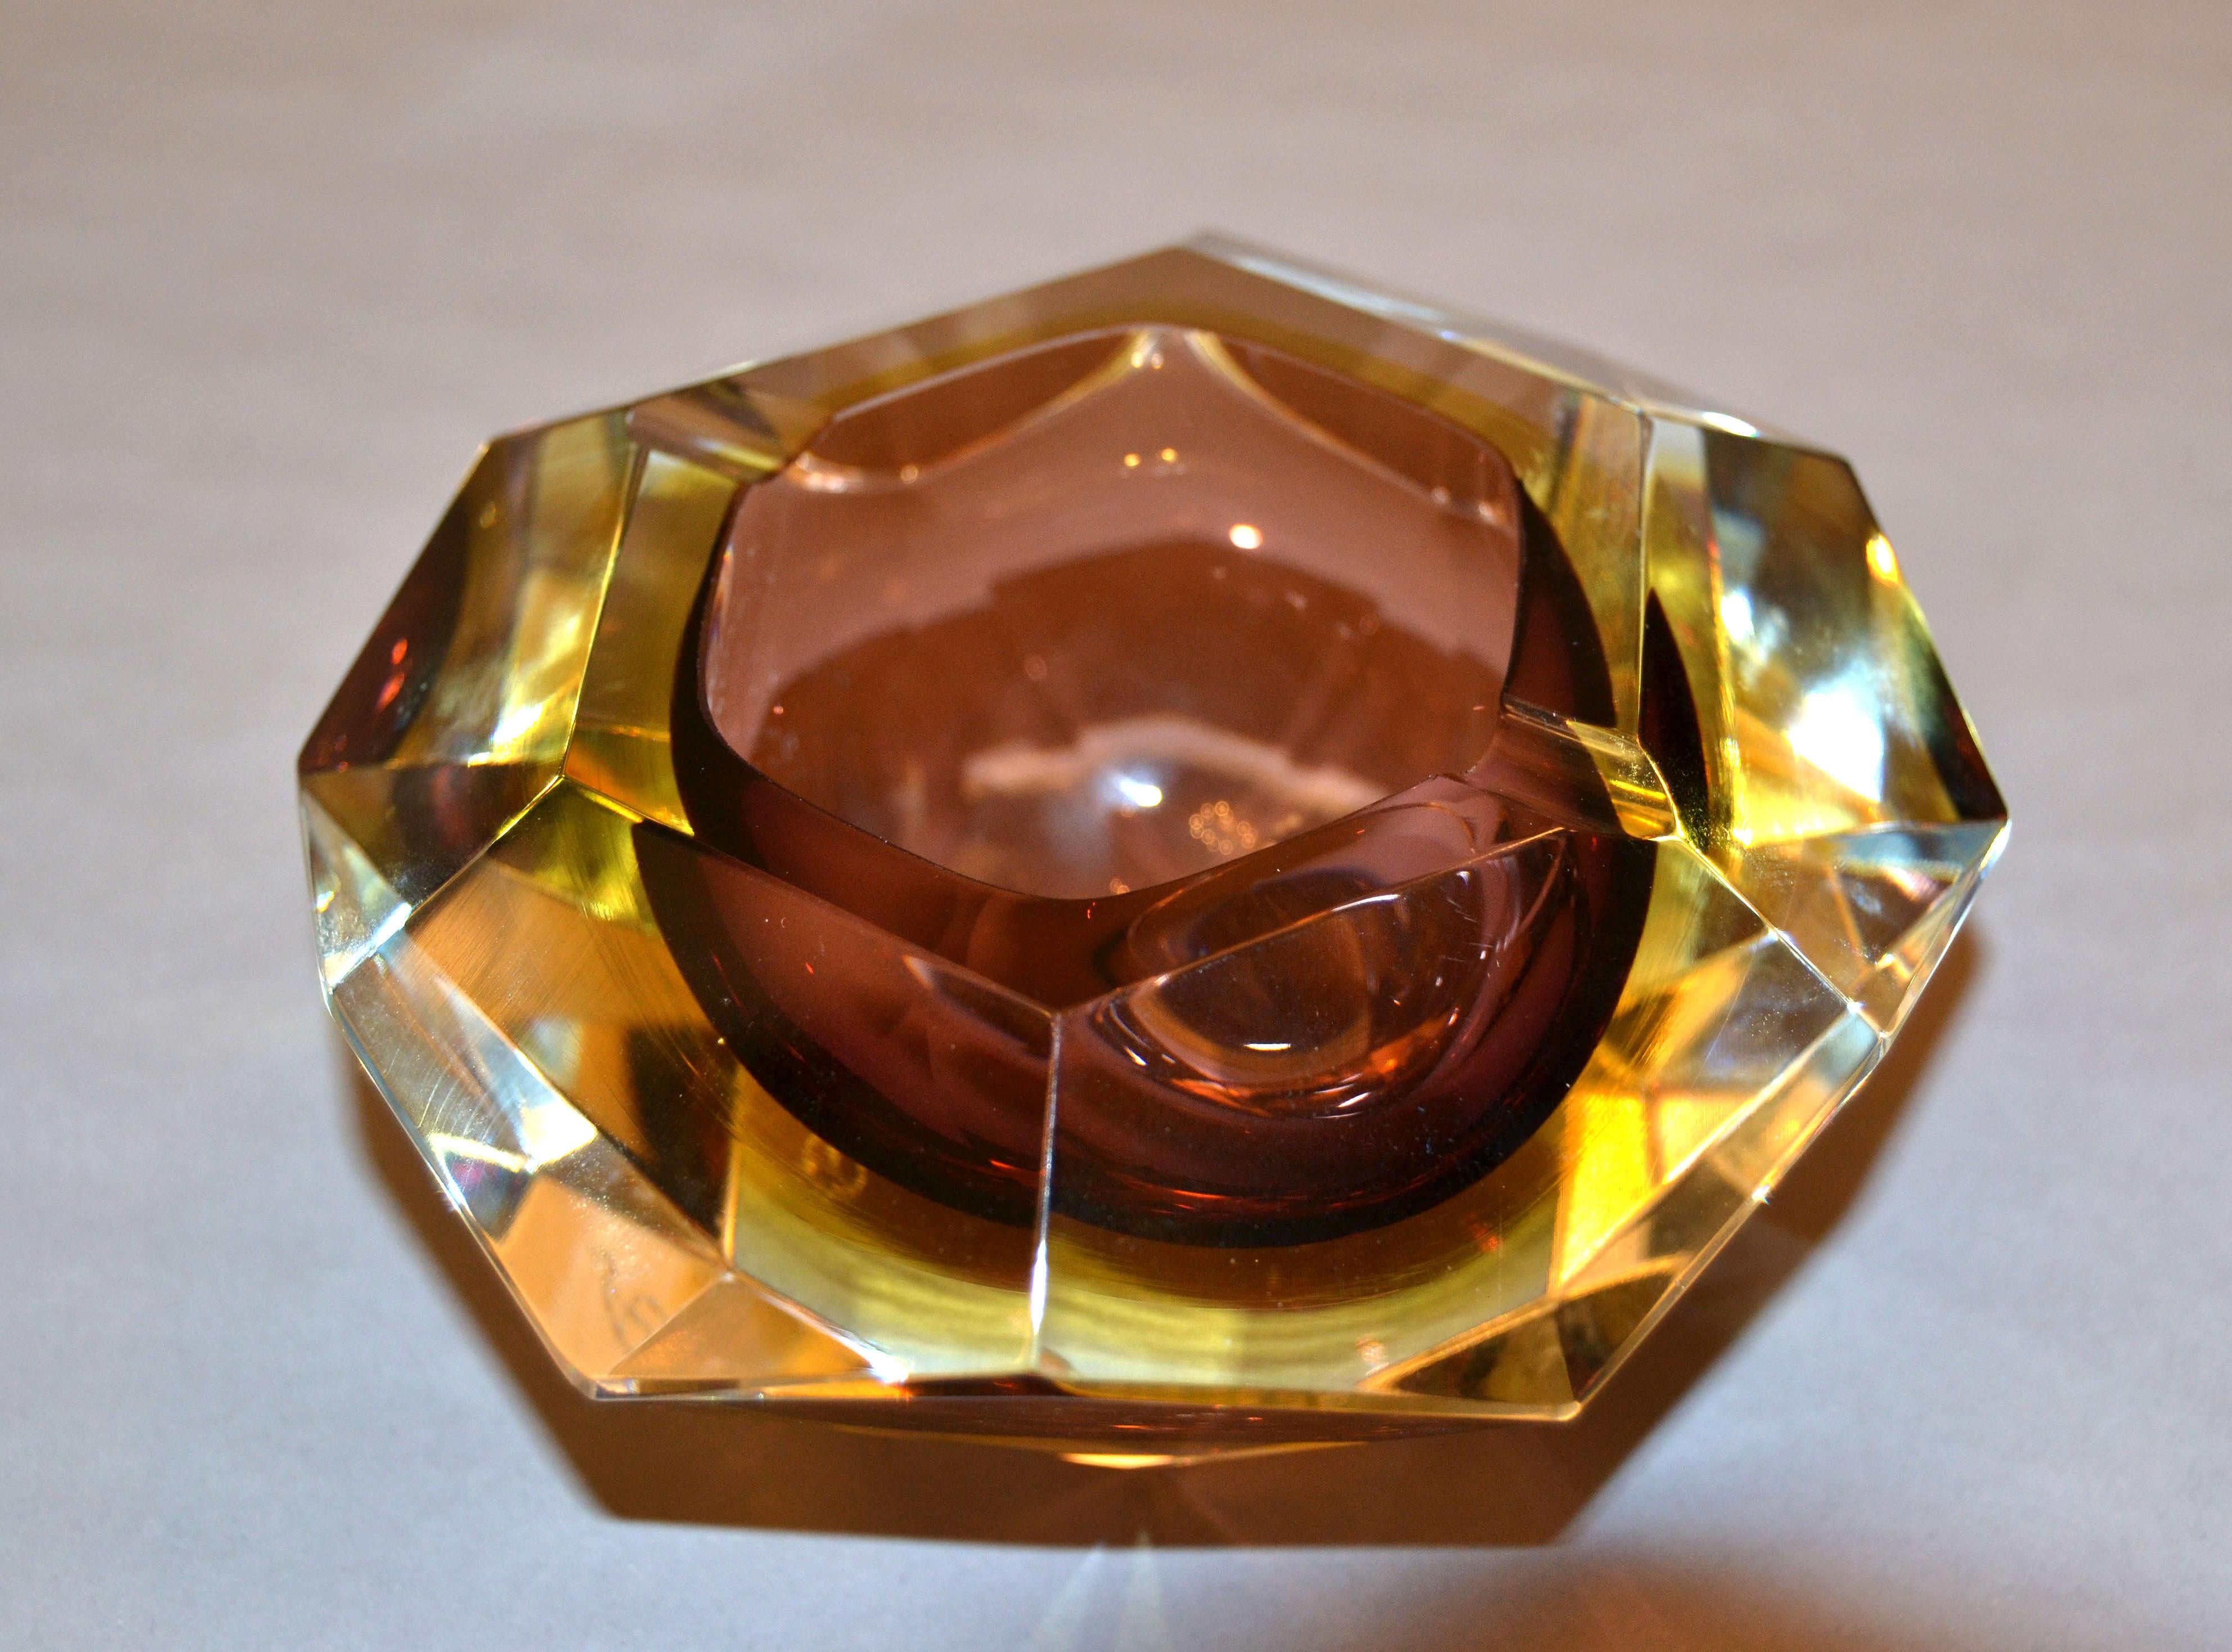 Facettenreicher brauner und gelber Aschenbecher aus Murano-Glas von Sommerso, Glasschale Flavio Poli zugeschrieben.
Braunes und bernsteinfarbenes Glas, eingefasst in klares Glas und ein hochdekoratives geometrisches Muster mit zwölf Flächen.
Unten